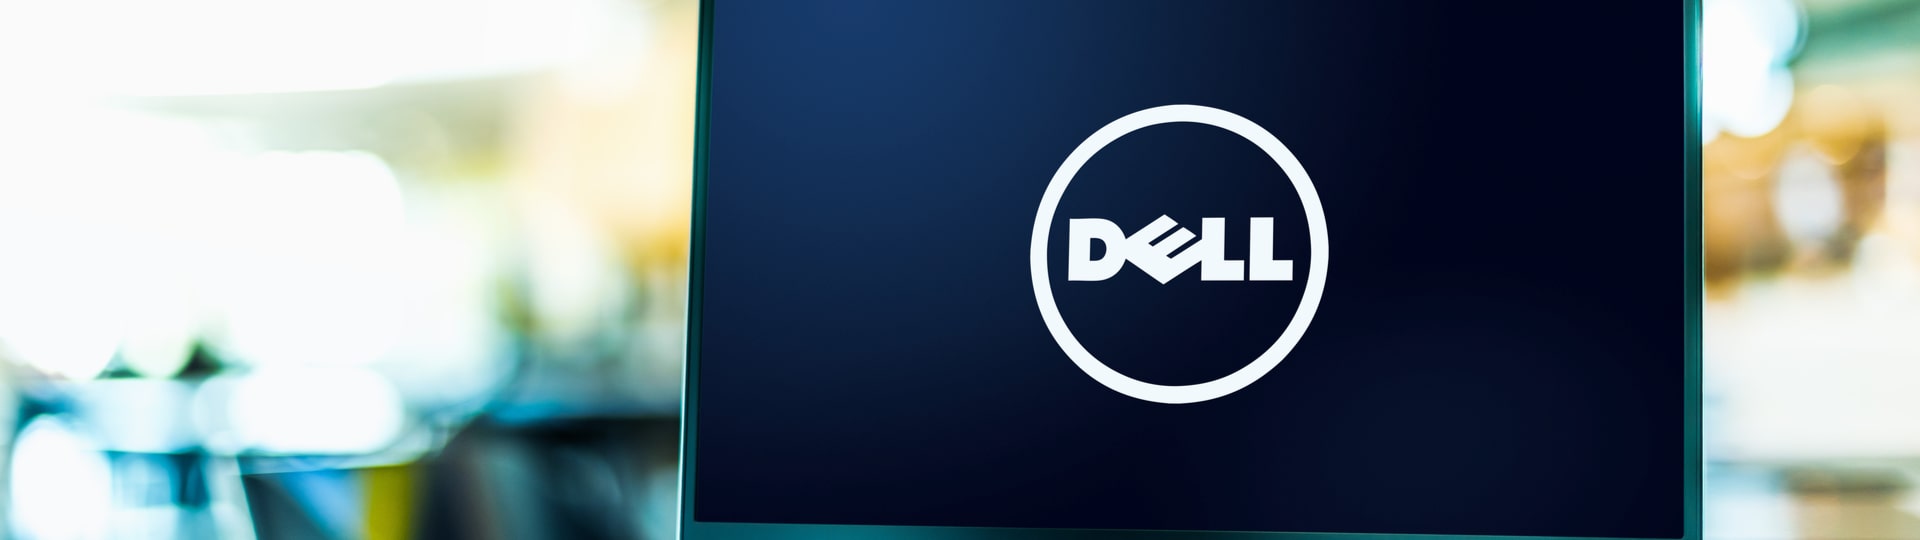 Dell zvýšil zisk o 62 procent